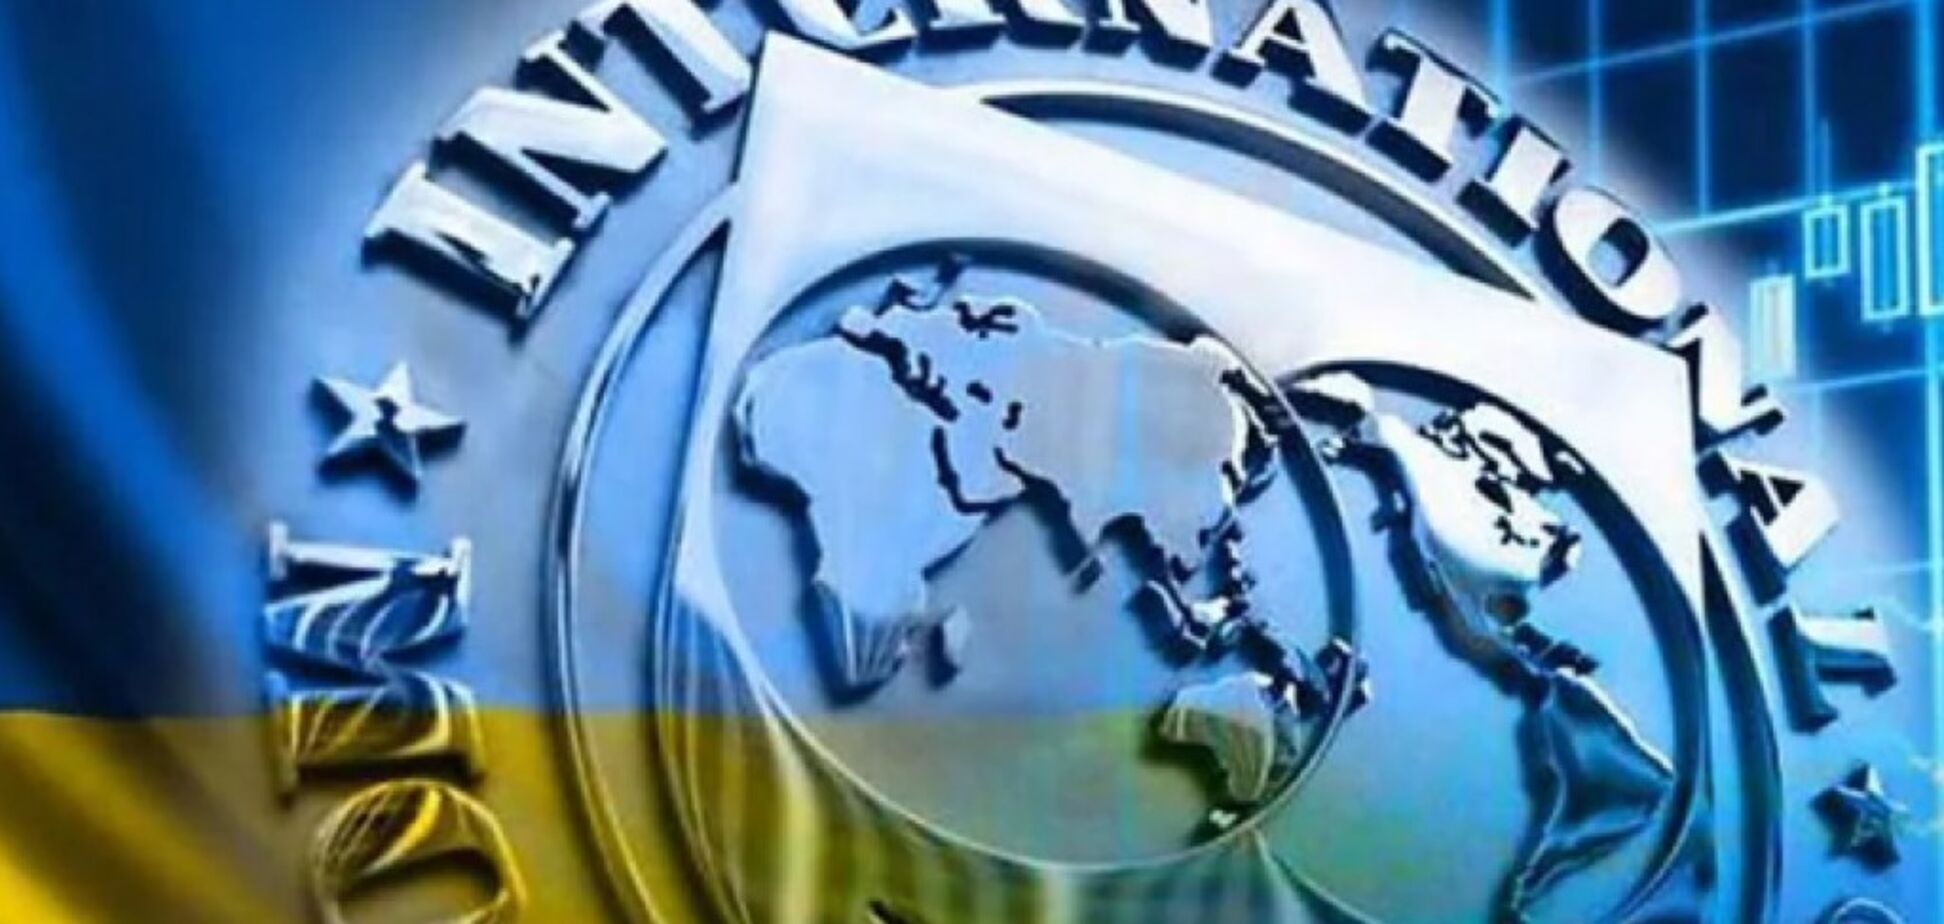 Ни пенсий, ни субсидий: Южанина назвала последствия саботажа требований МВФ